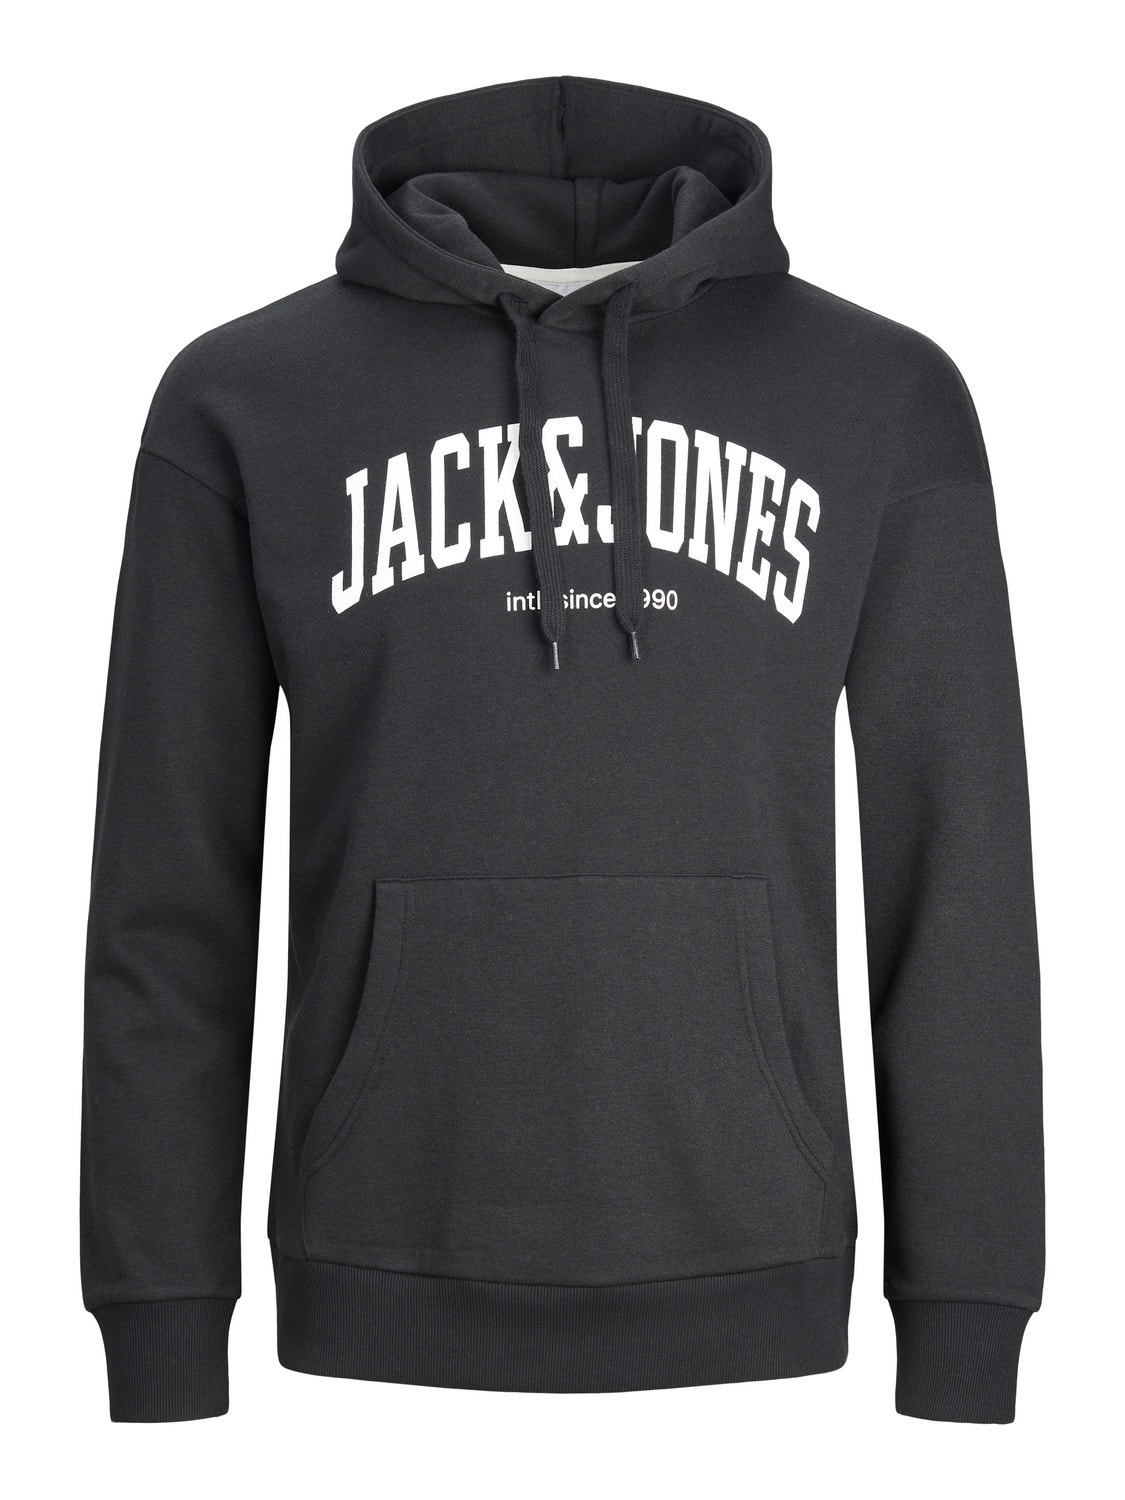 Jack & Jones Logo Hoodie -Black - 12236513